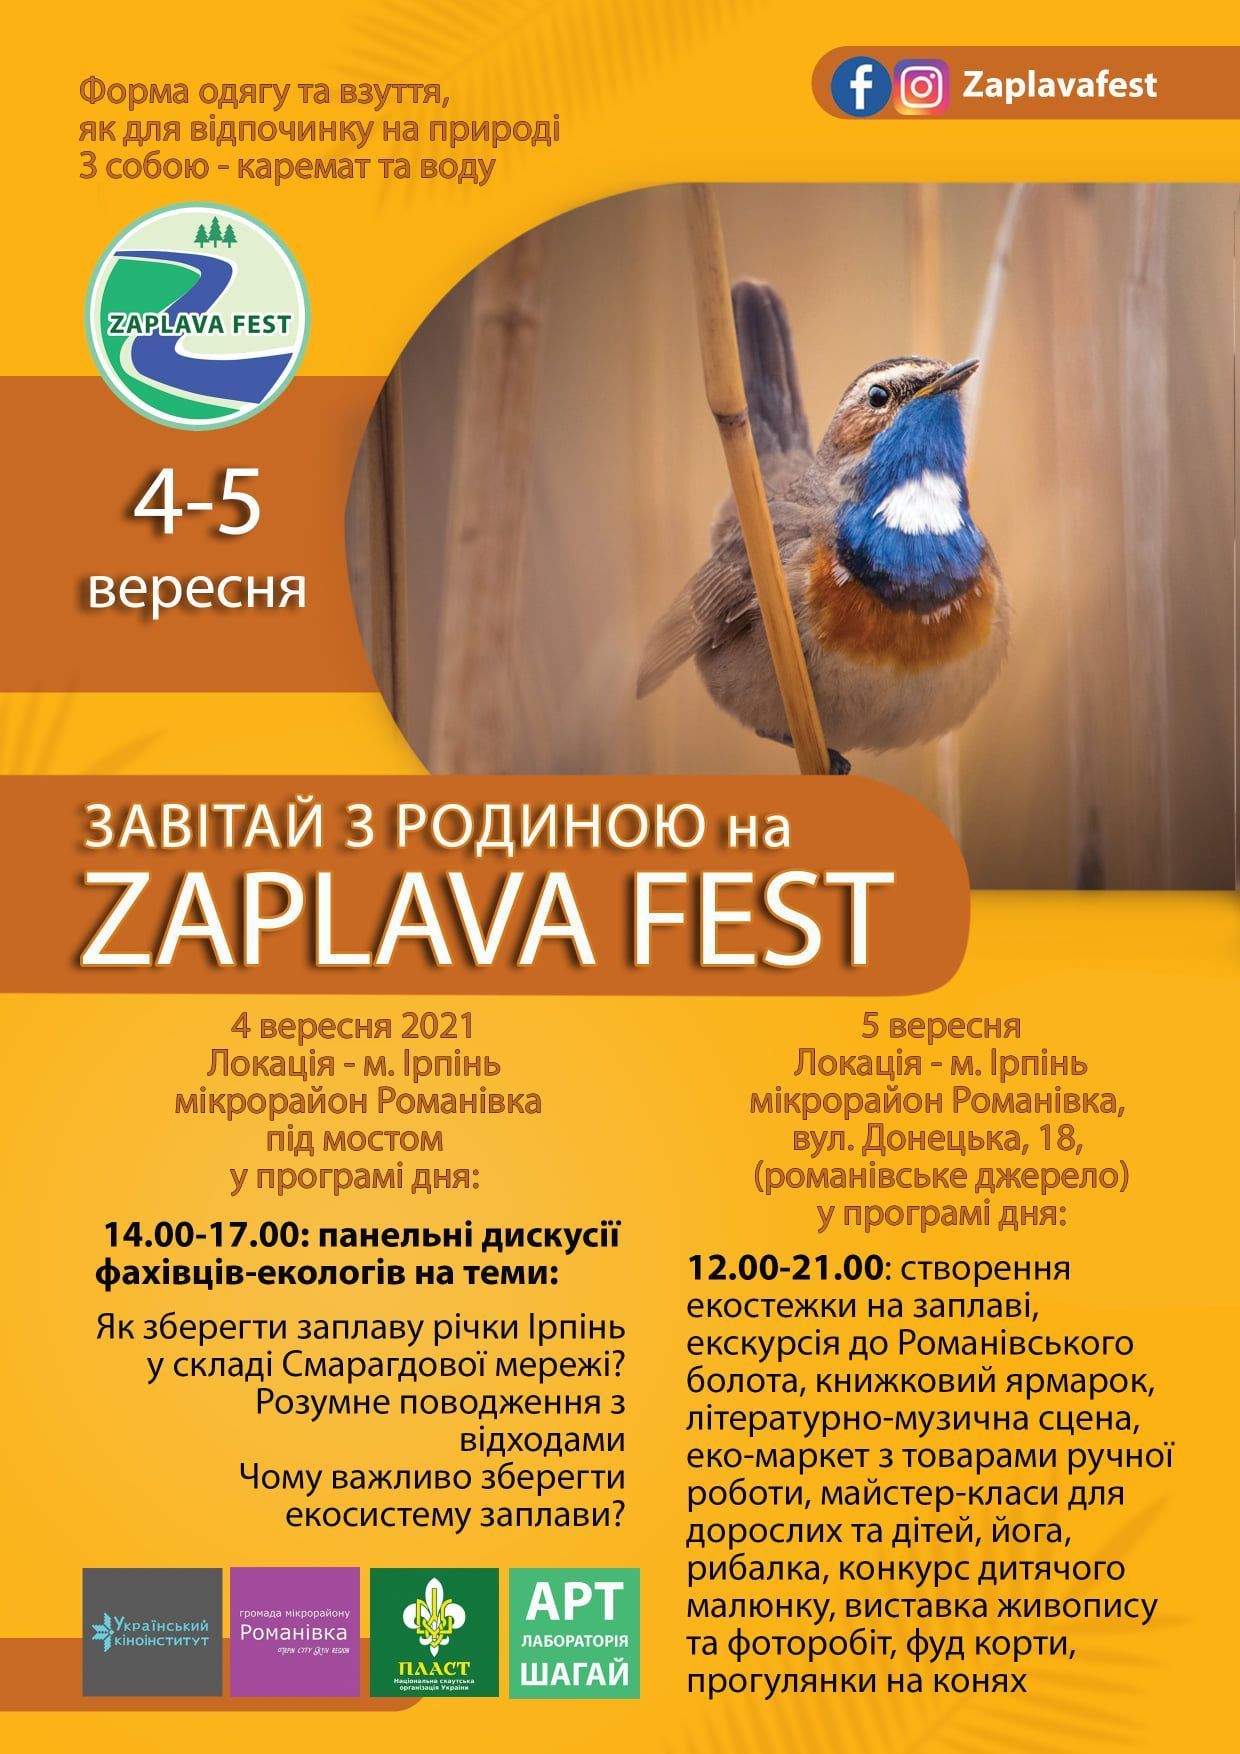 facebook.com/Zaplavafest